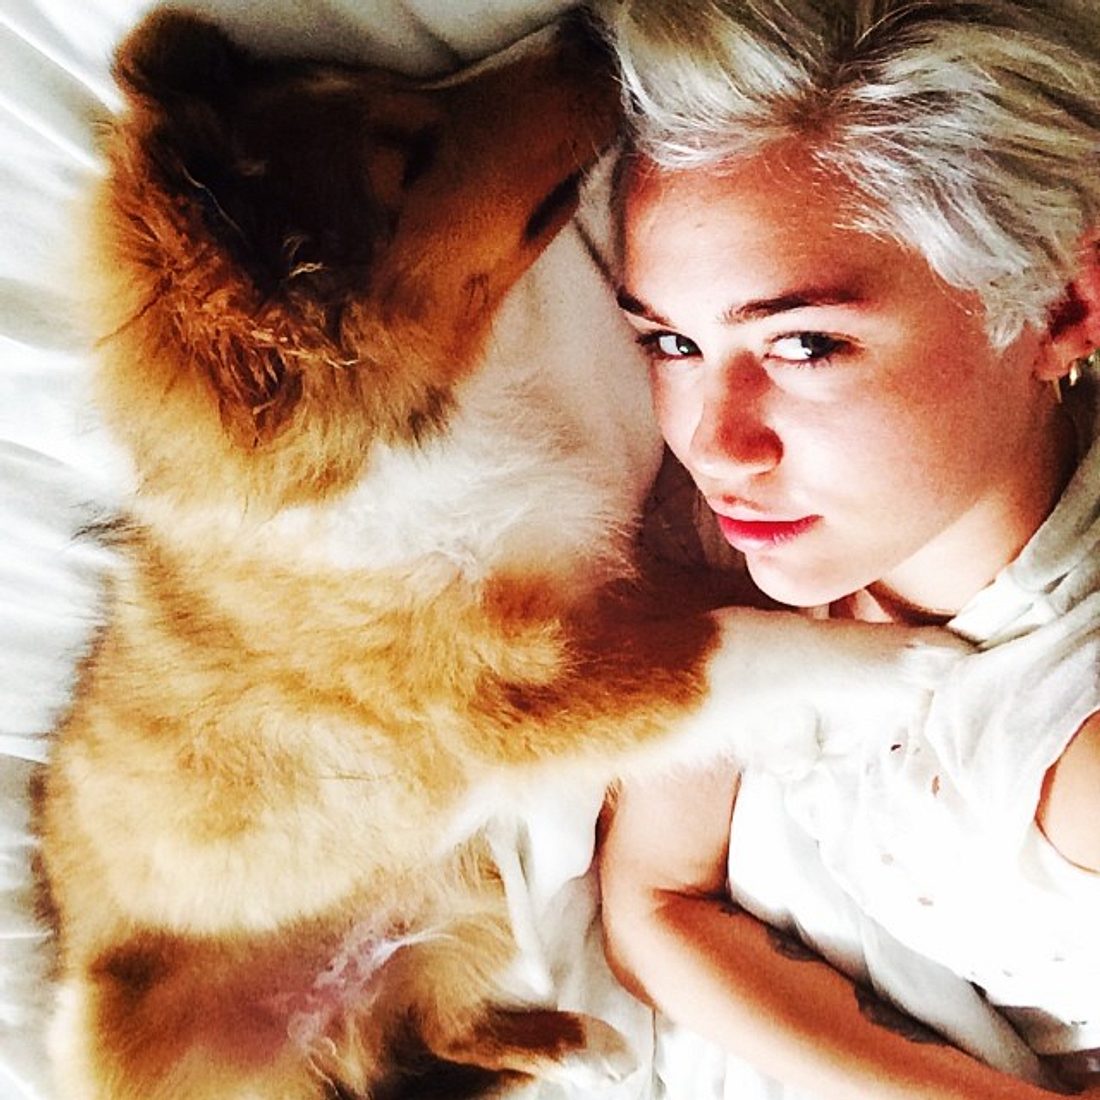 Der neue Hund an Miley Cyrus' Seite: Emu!